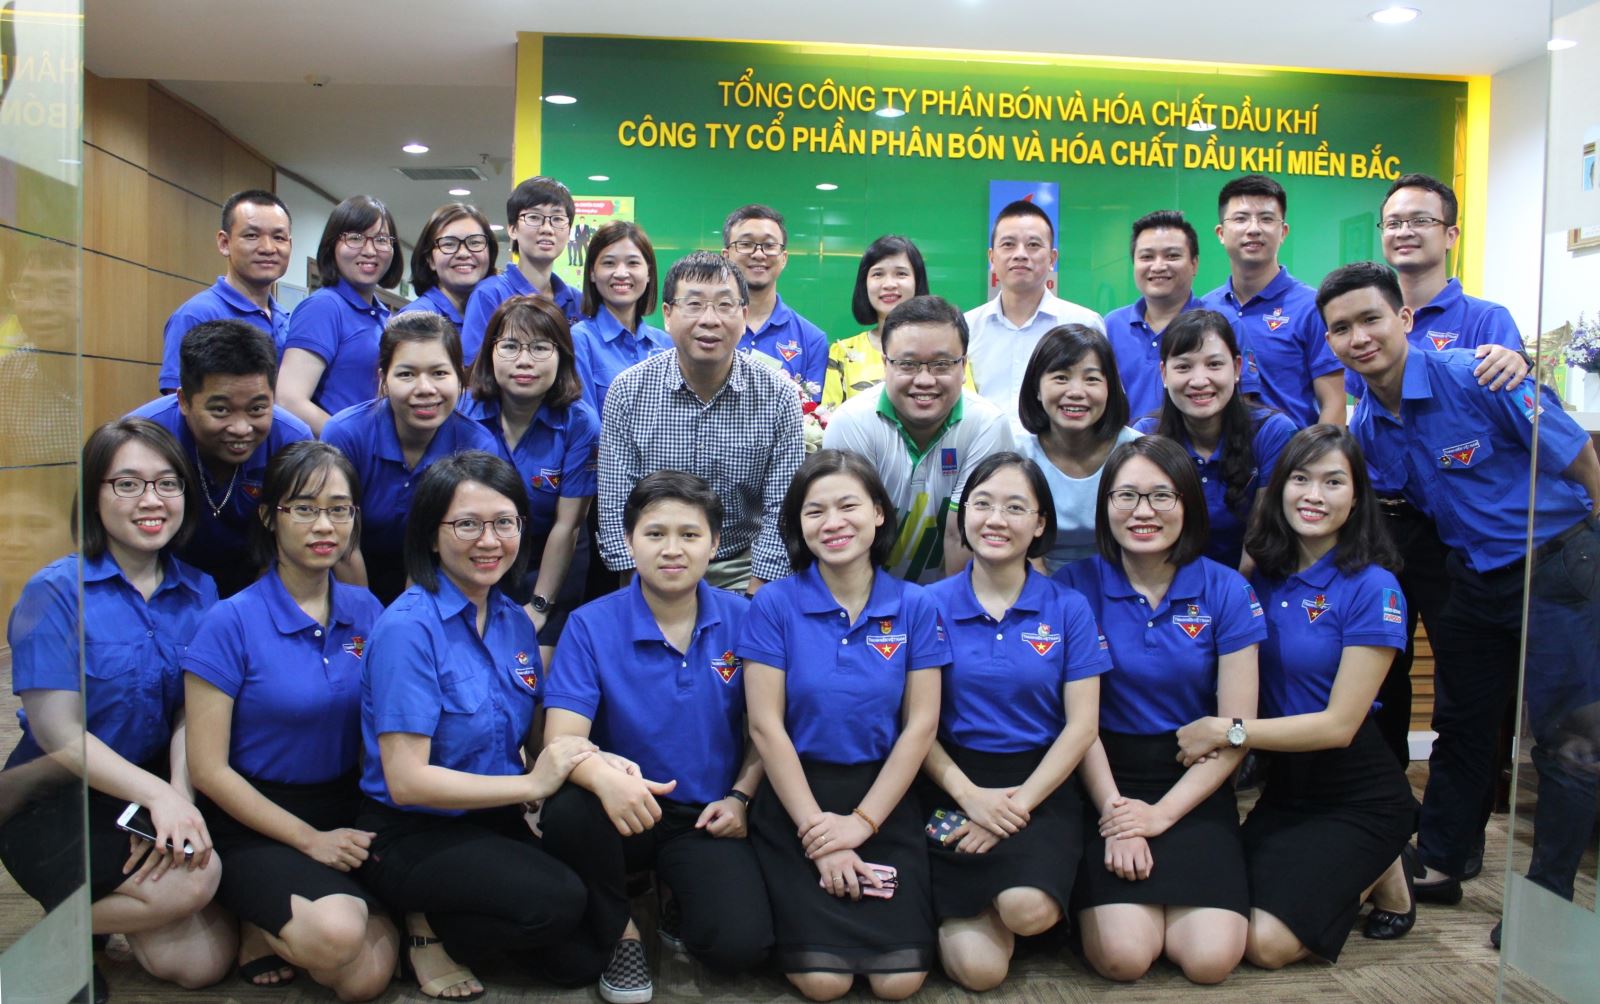 PVFCCo North tổ chức thành công Đại hội Chi đoàn cơ sở nhiệm kỳ IV (2019 - 2022).